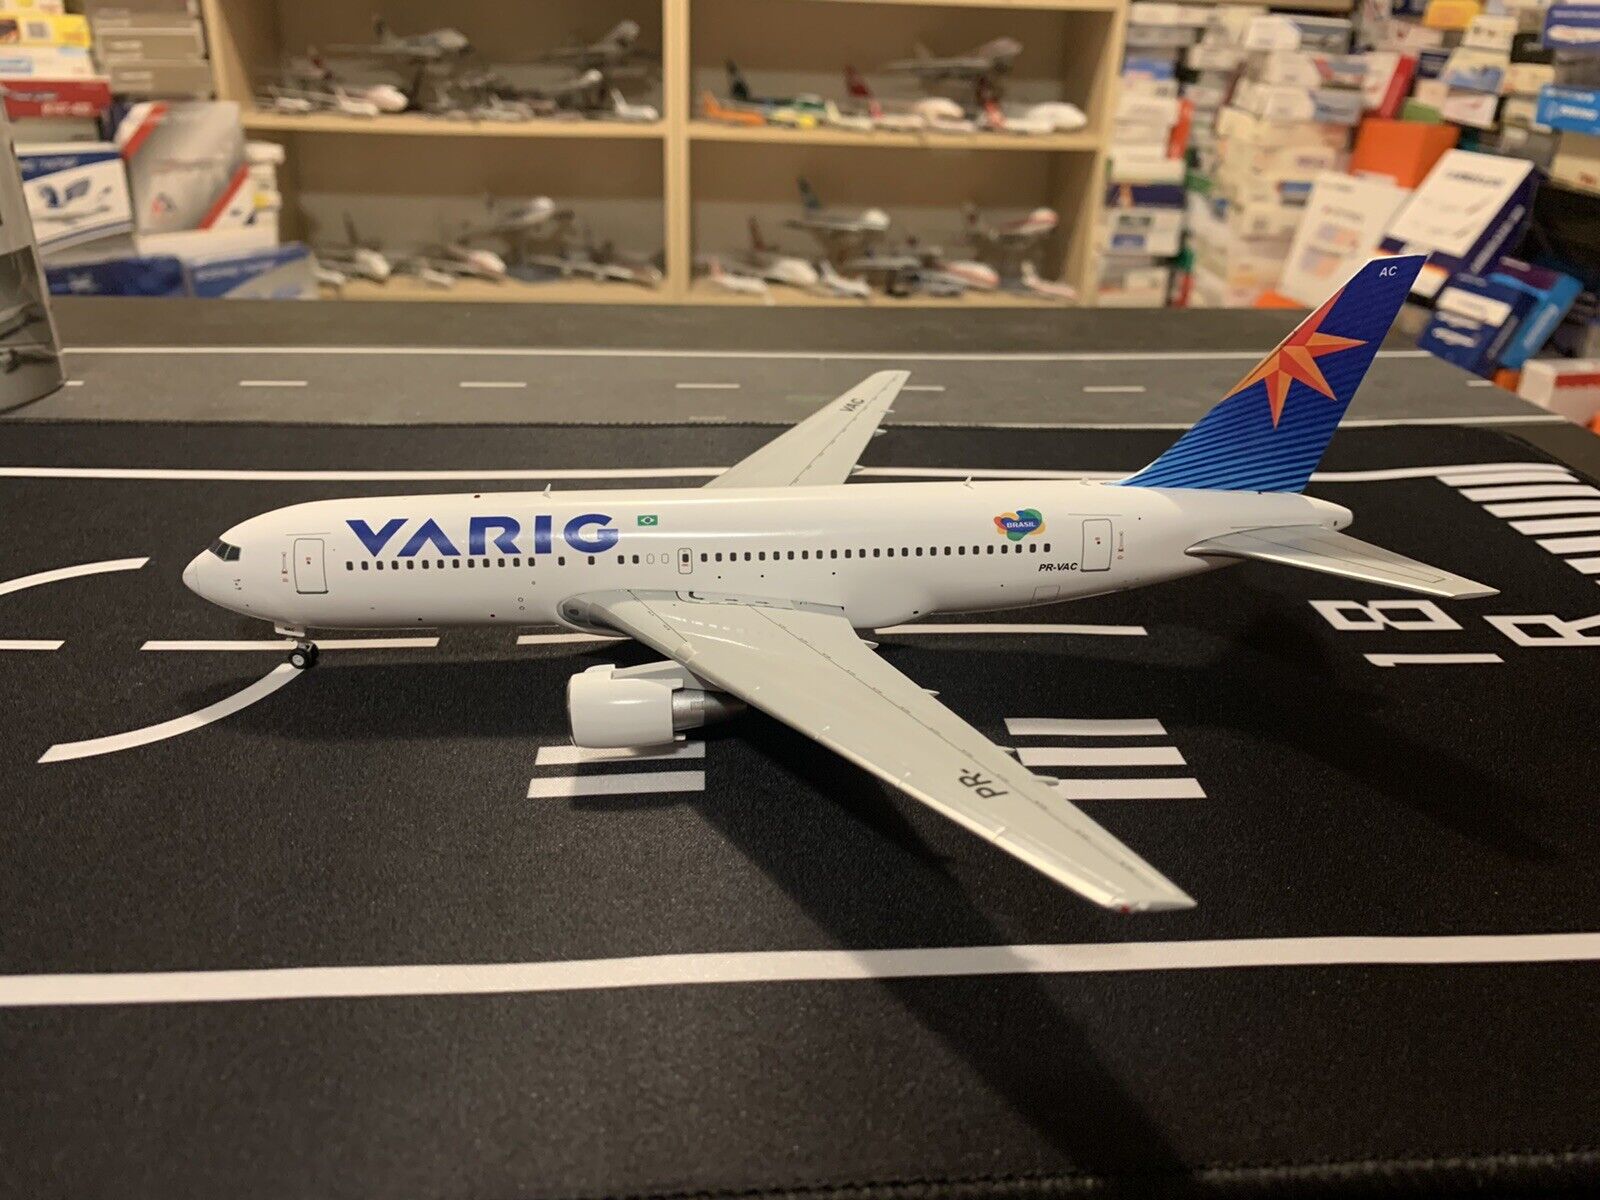 JC Wings 1:200 Varig B767-200ER PR-VAC Brazil Airlines Custom Diecast Model